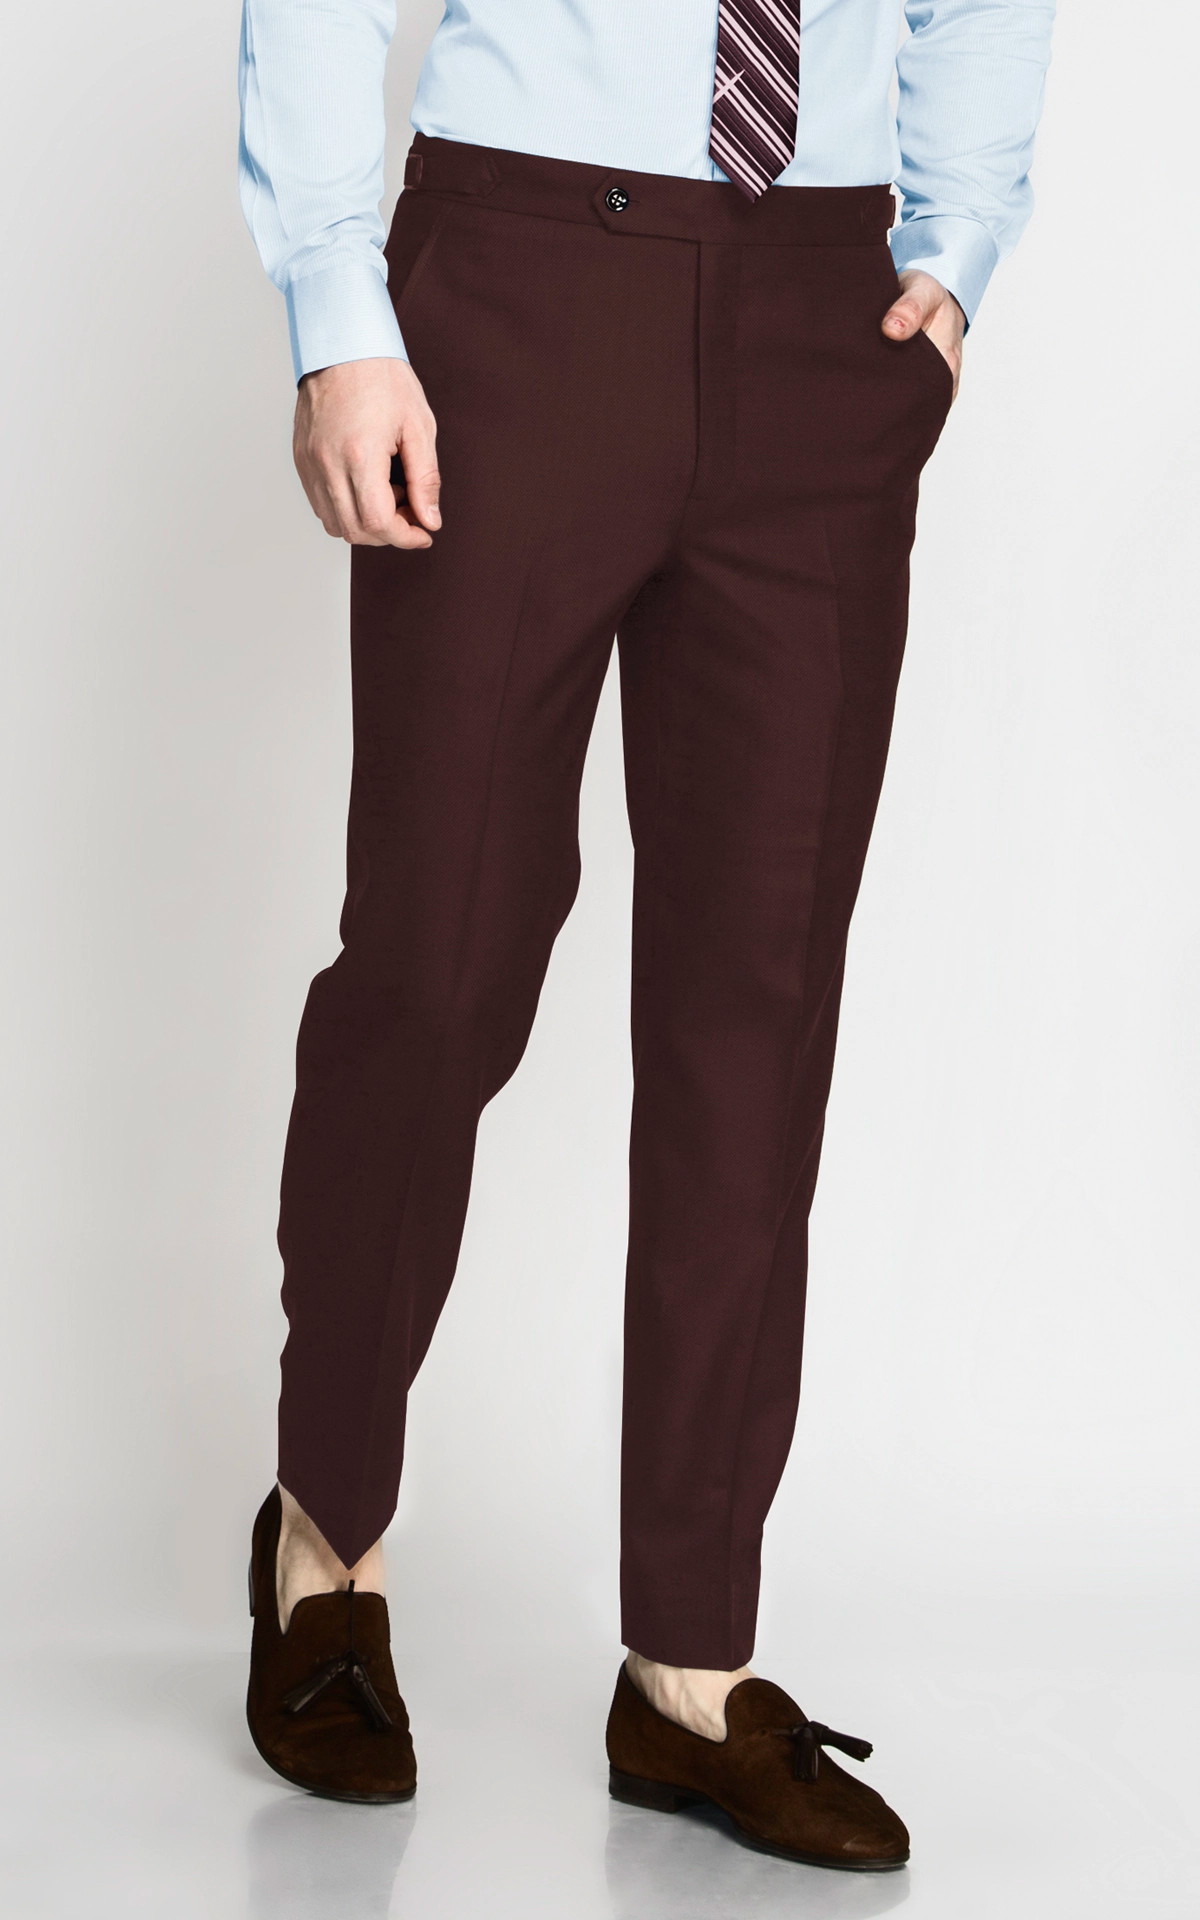 burgundy pants